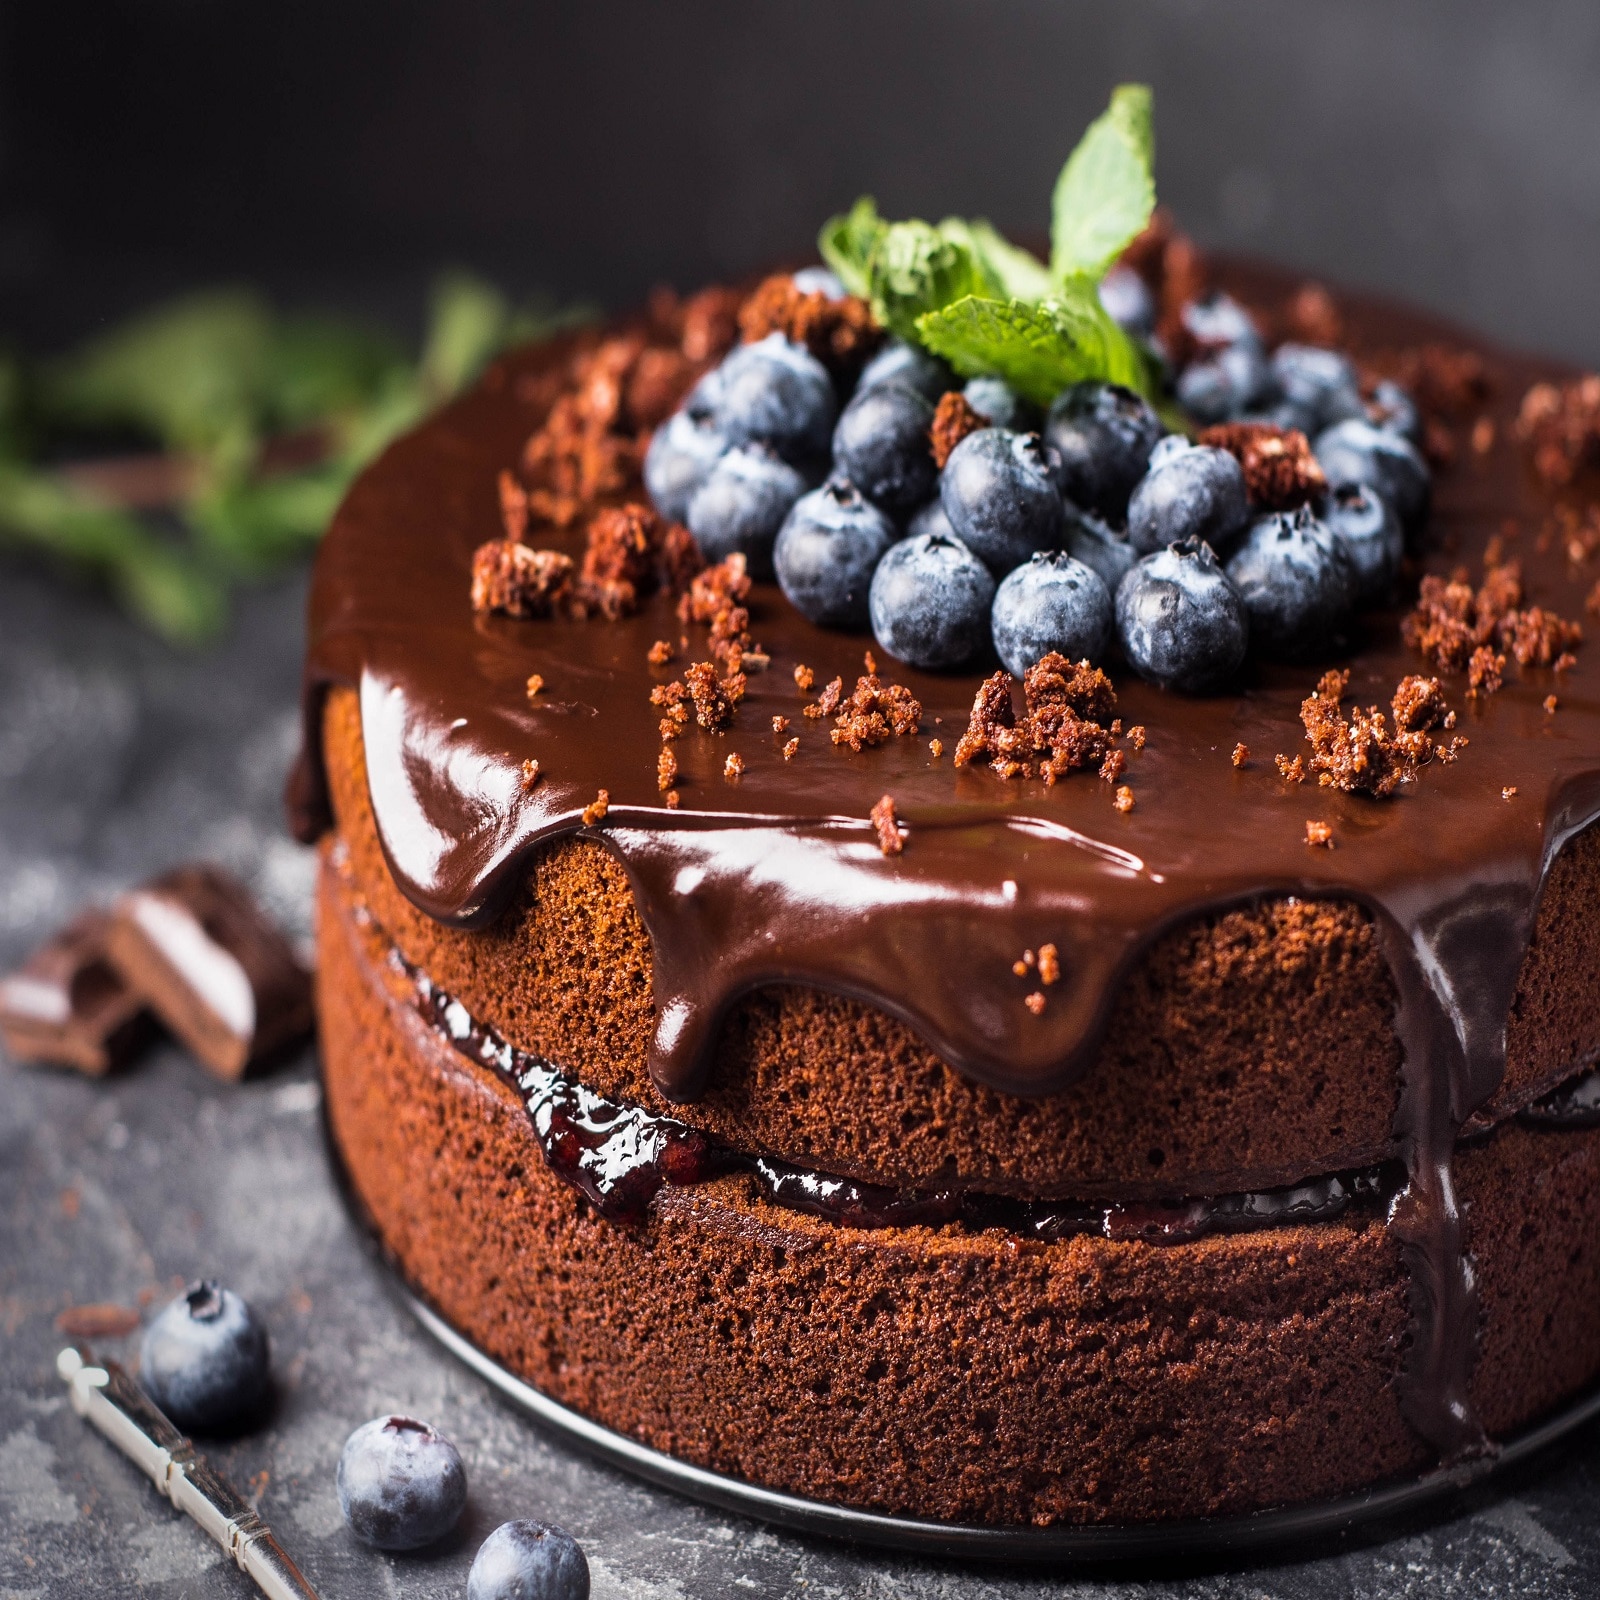 चॉकलेट केक बनाने की रेसिपी हिंदी में | Chocolate Cake Recipe in Hindi